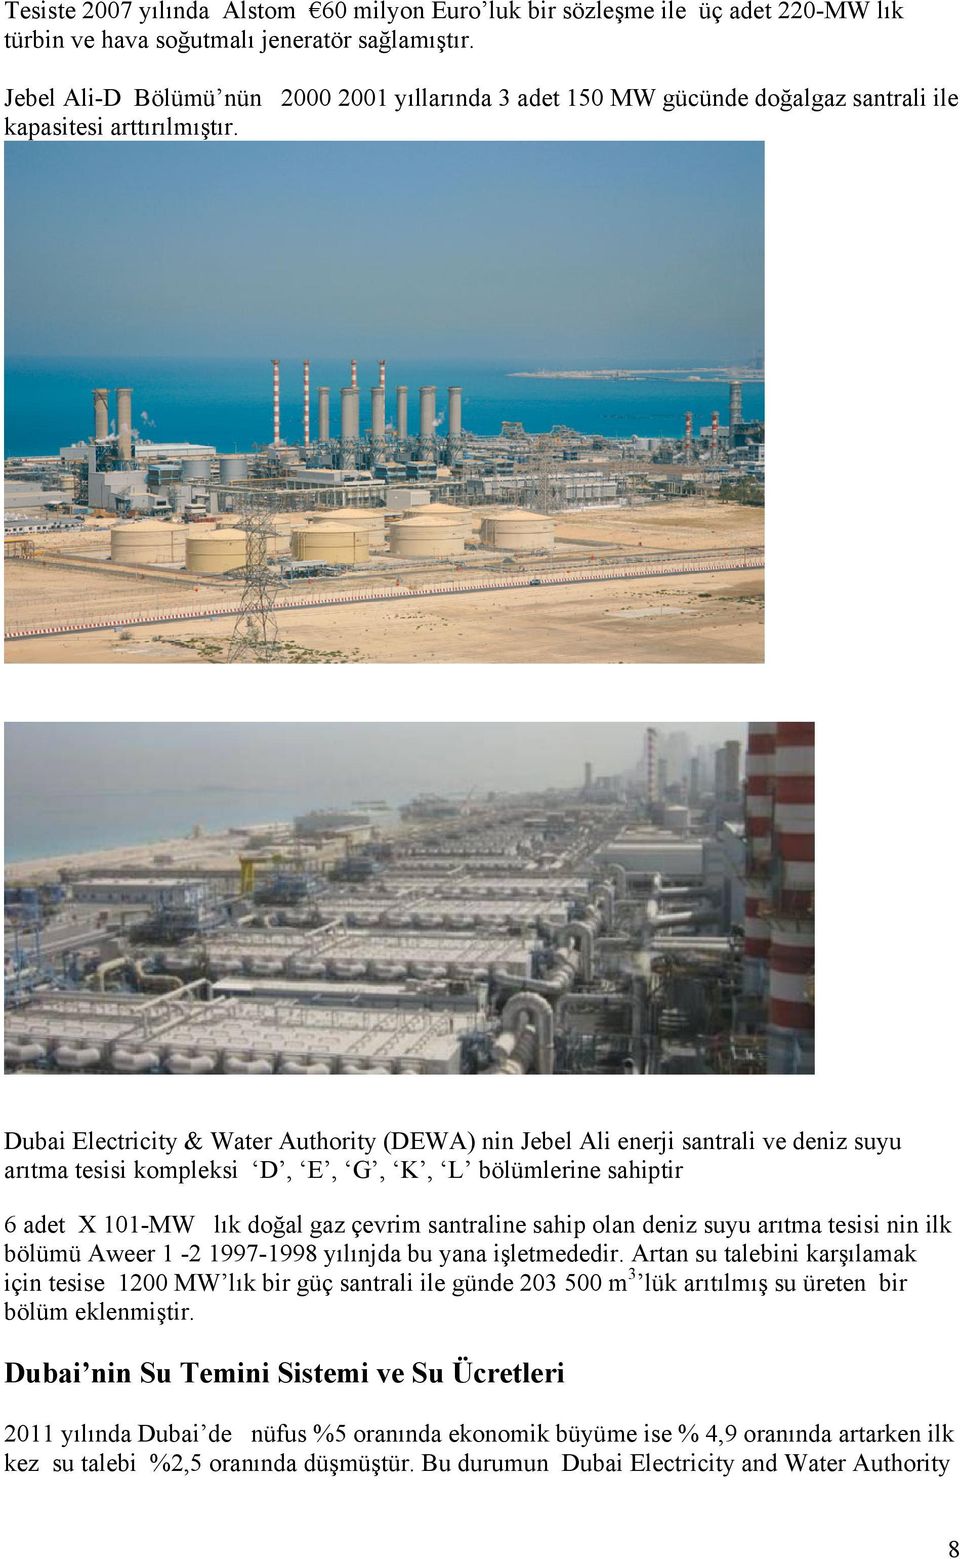 Dubai Electricity & Water Authority (DEWA) nin Jebel Ali enerji santrali ve deniz suyu arıtma tesisi kompleksi D, E, G, K, L bölümlerine sahiptir 6 adet X 101-MW lık doğal gaz çevrim santraline sahip